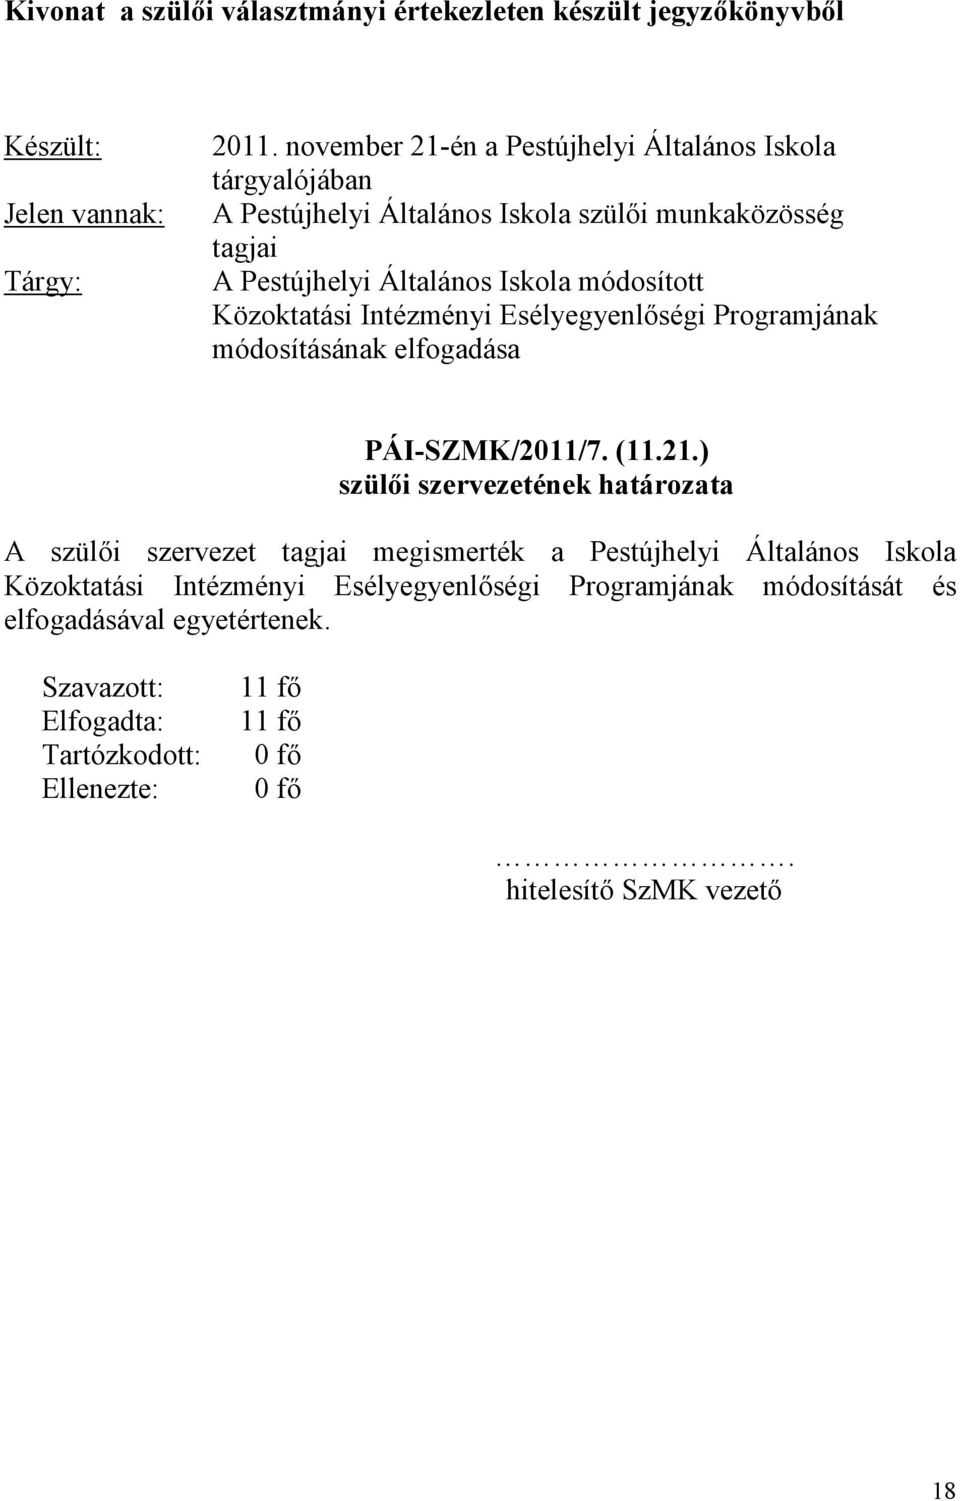 Közoktatási Intézményi Esélyegyenlıségi Programjának módosításának elfogadása PÁI-SZMK/2011/7. (11.21.